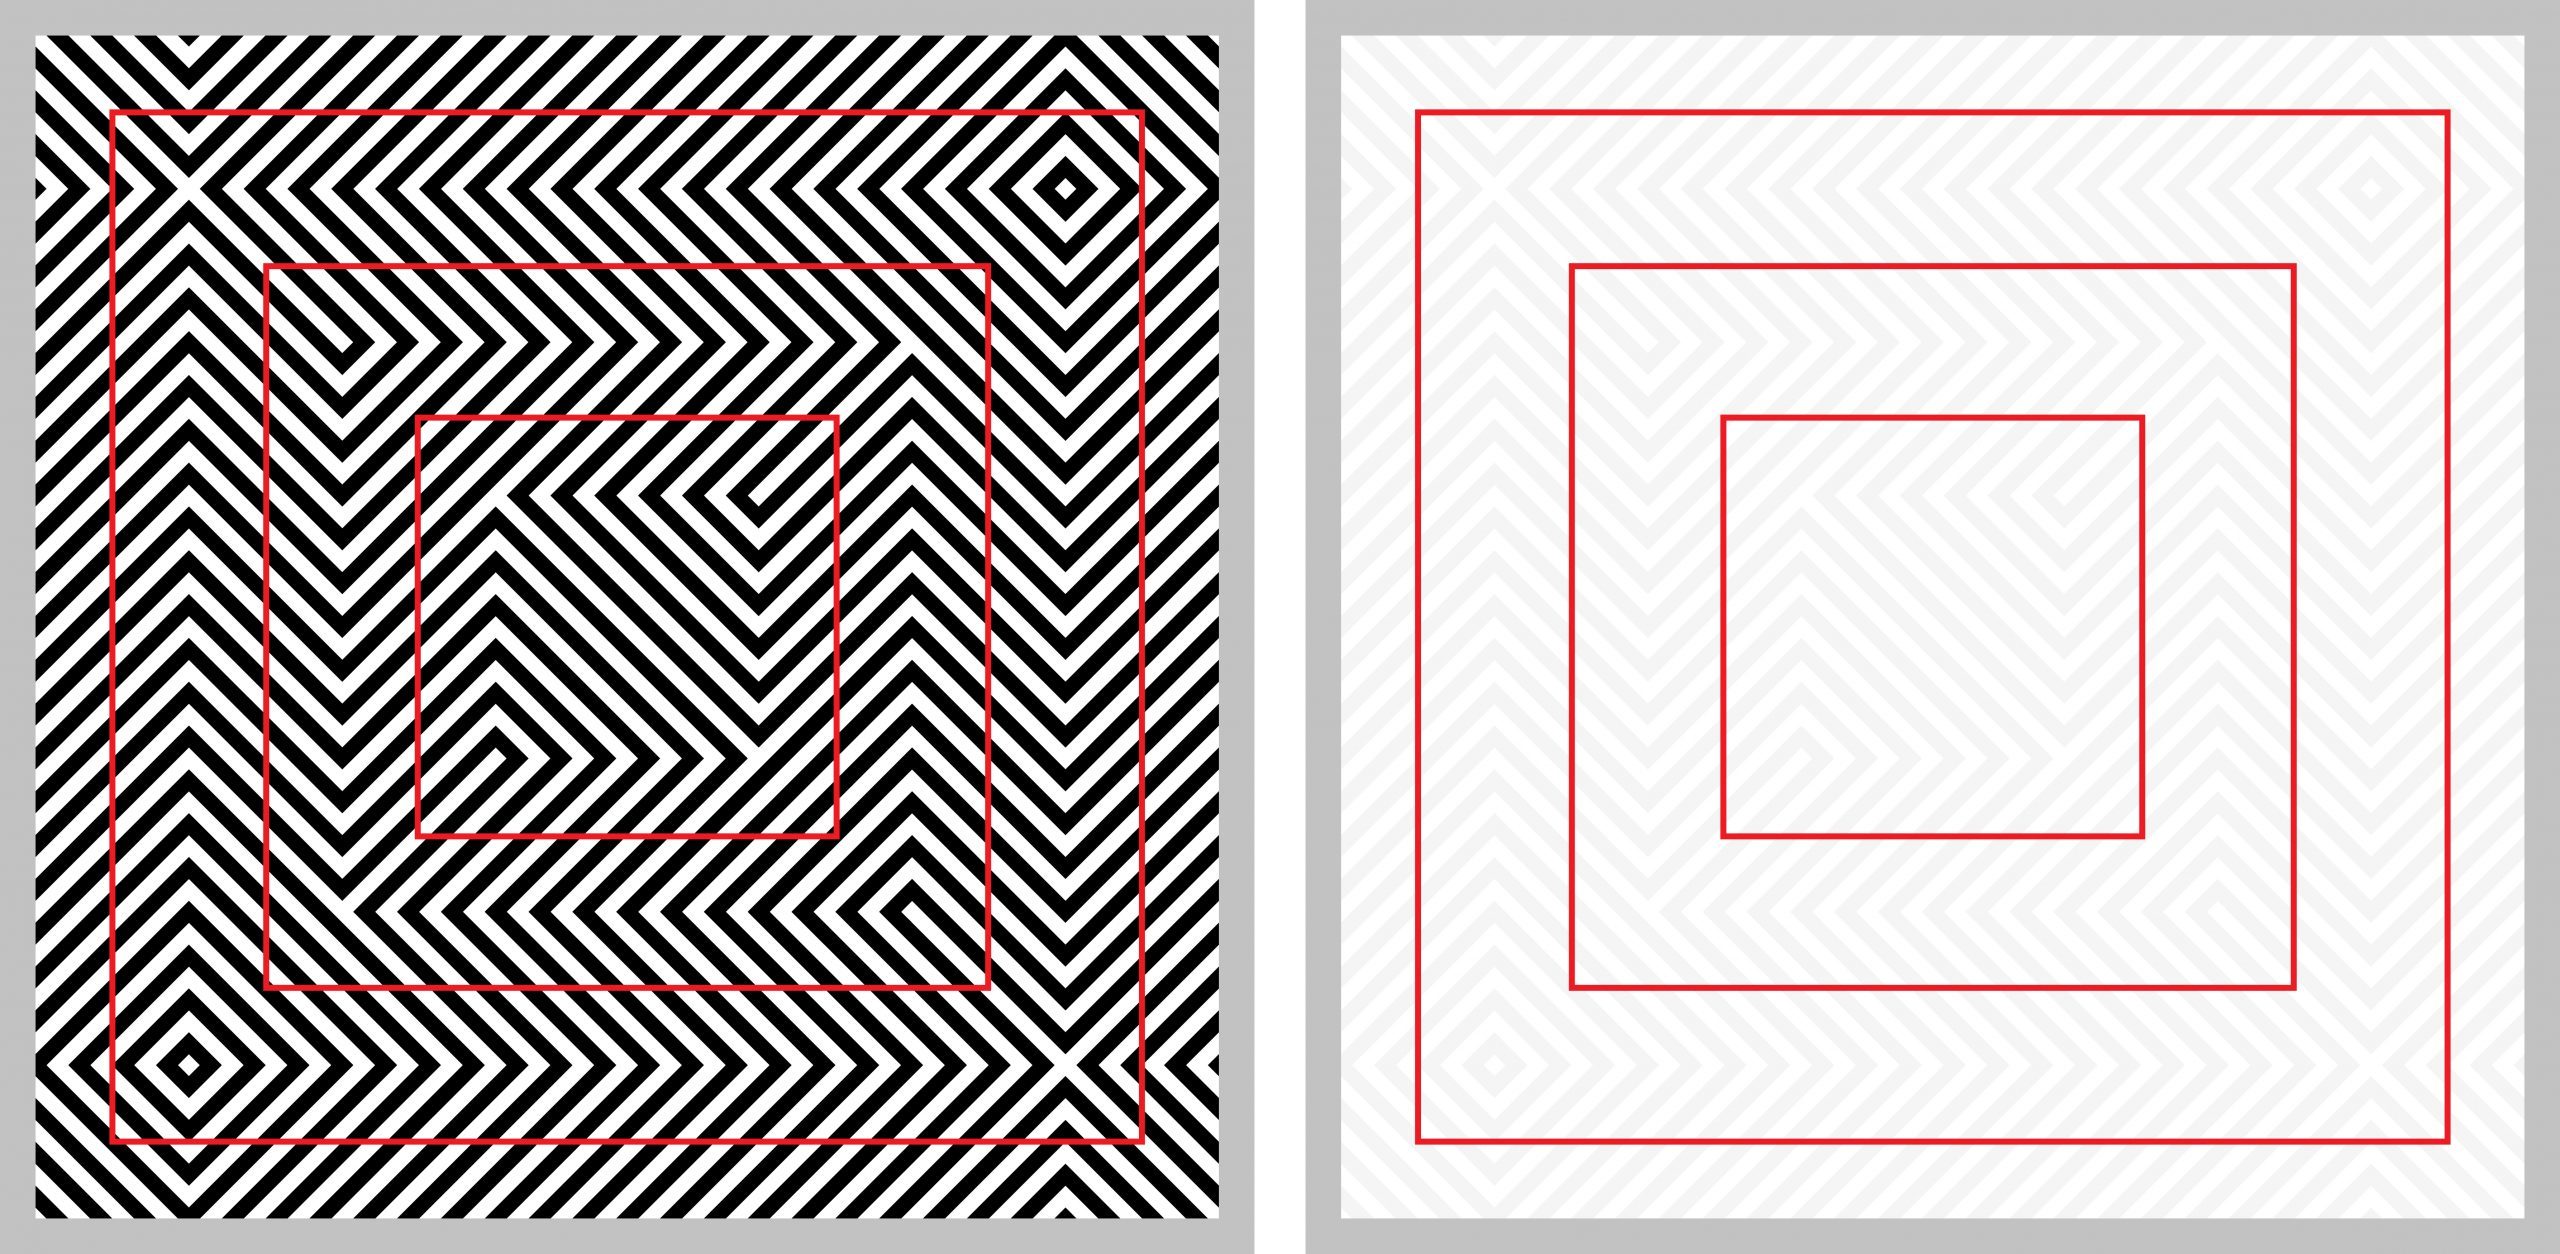 Ilusión óptica (los cuadrados rojos se ven distorsionados) con una explicación a la derecha